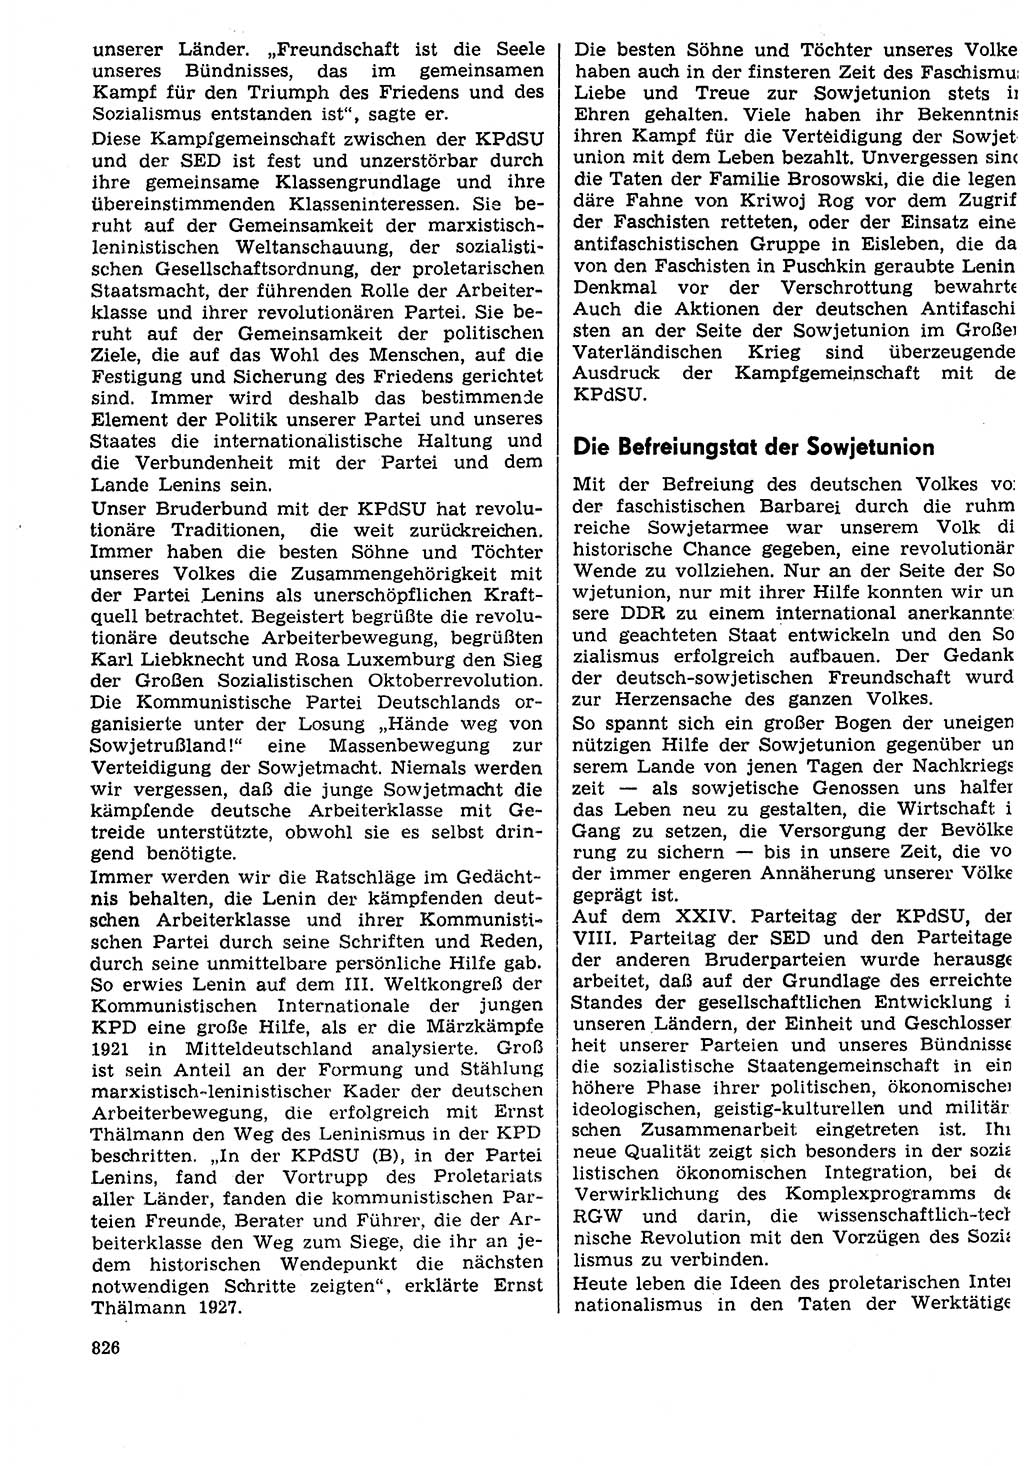 Neuer Weg (NW), Organ des Zentralkomitees (ZK) der SED (Sozialistische Einheitspartei Deutschlands) für Fragen des Parteilebens, 29. Jahrgang [Deutsche Demokratische Republik (DDR)] 1974, Seite 826 (NW ZK SED DDR 1974, S. 826)